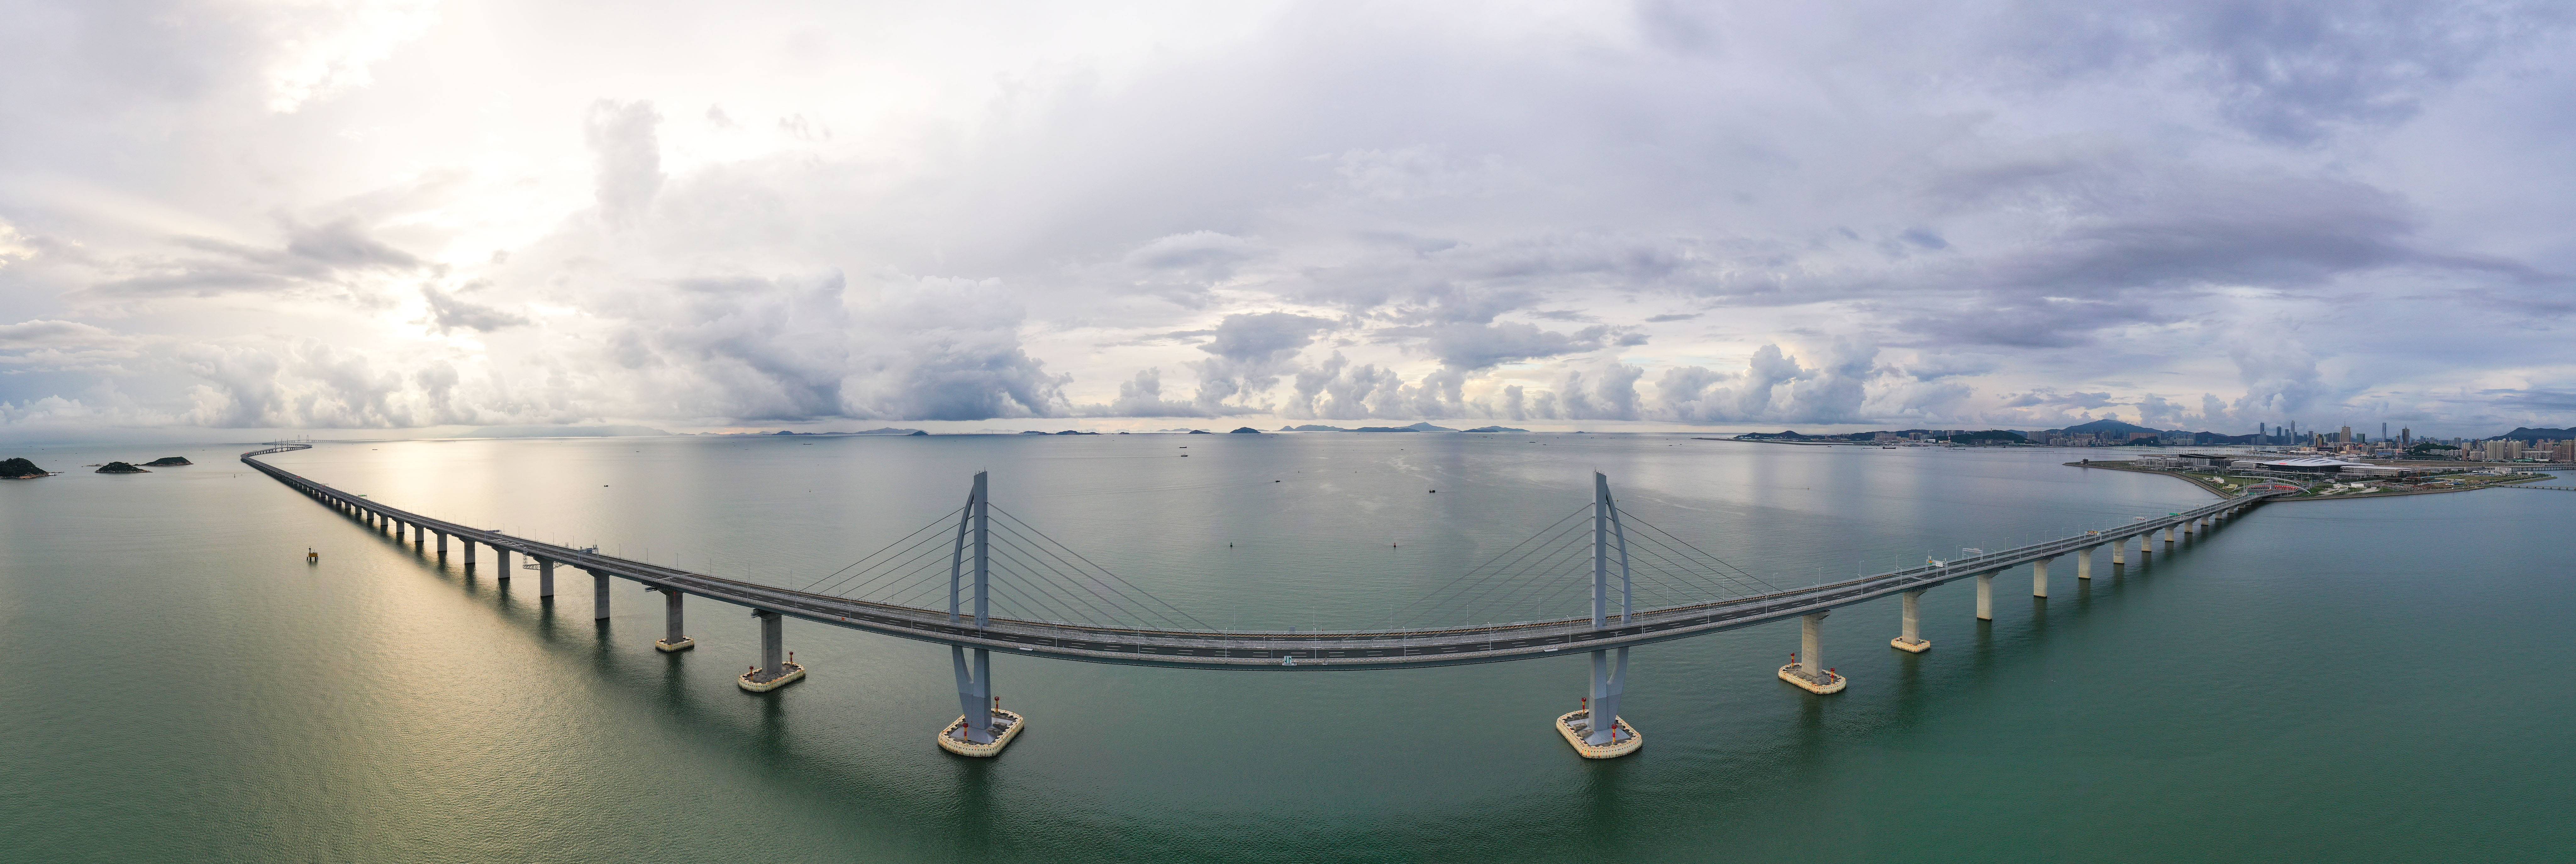 这是2020年9月12日拍摄的港珠澳大桥(无人机全景照片).